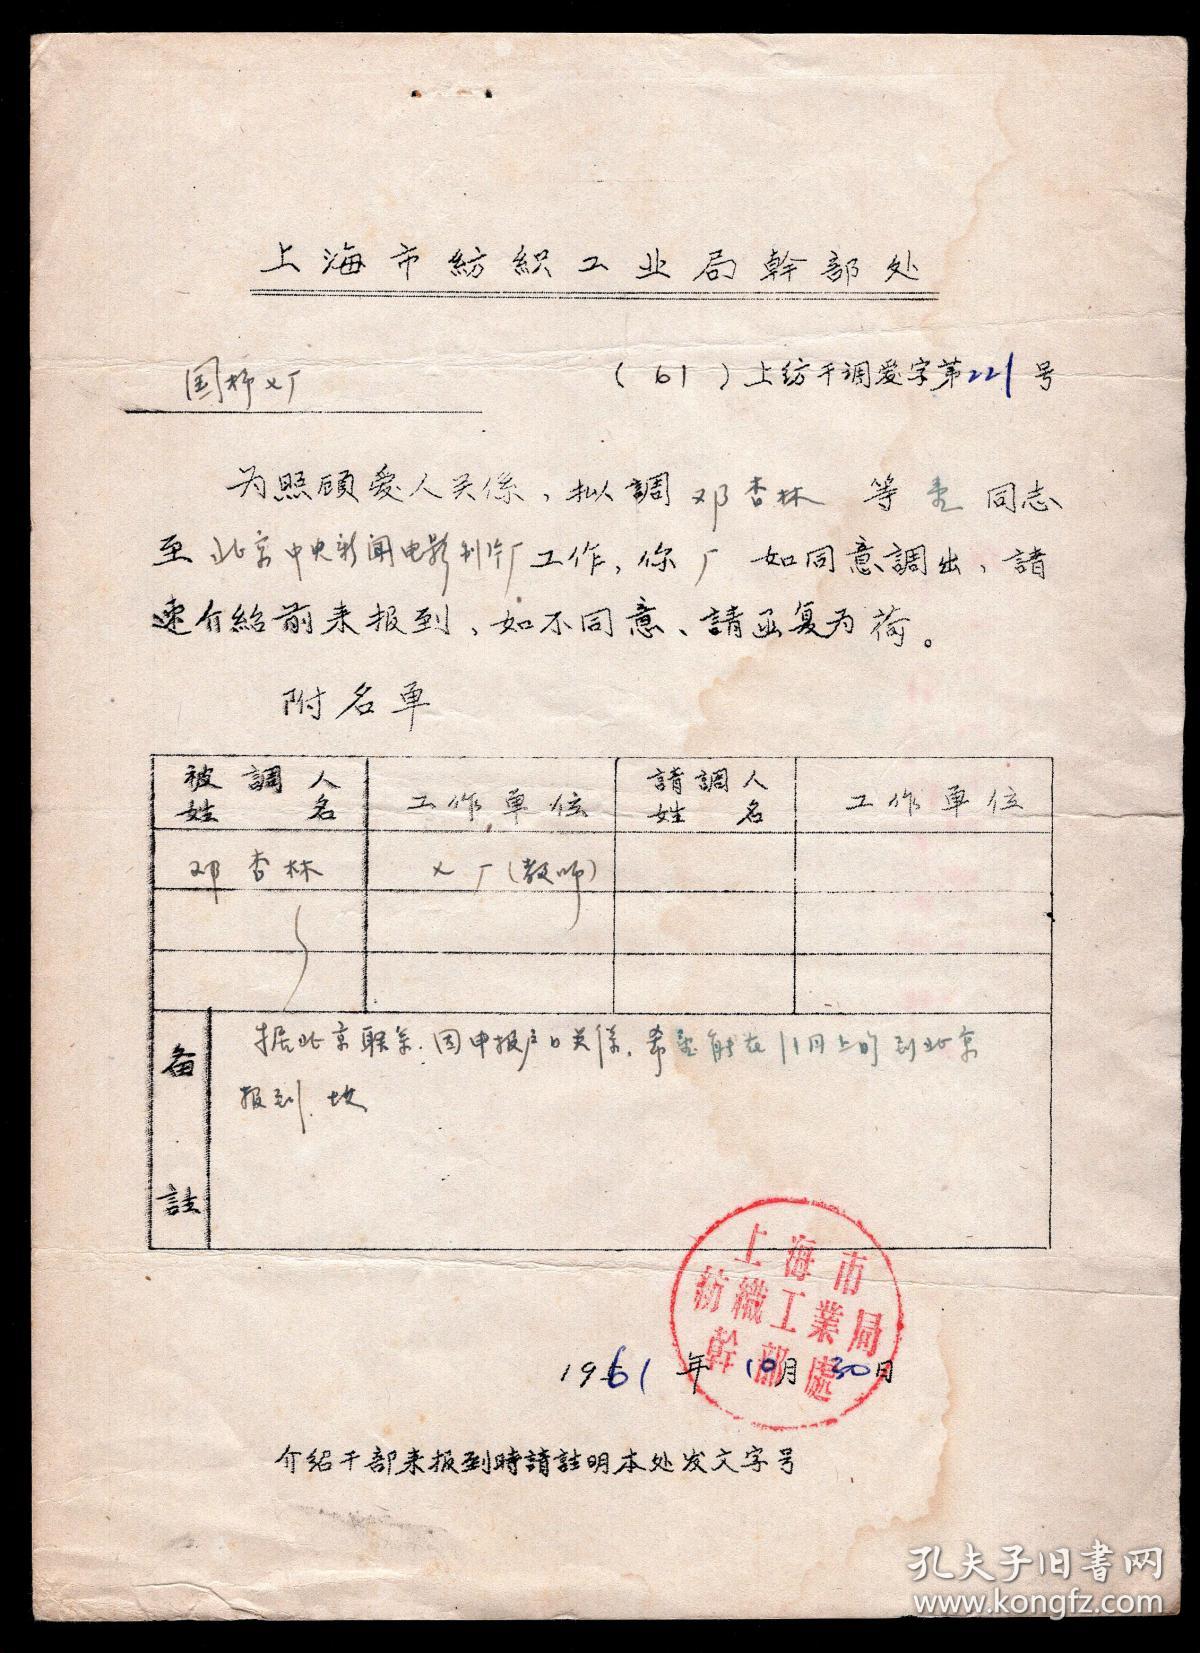 [O-49]上海市纺织工业局干部处介绍信第221号